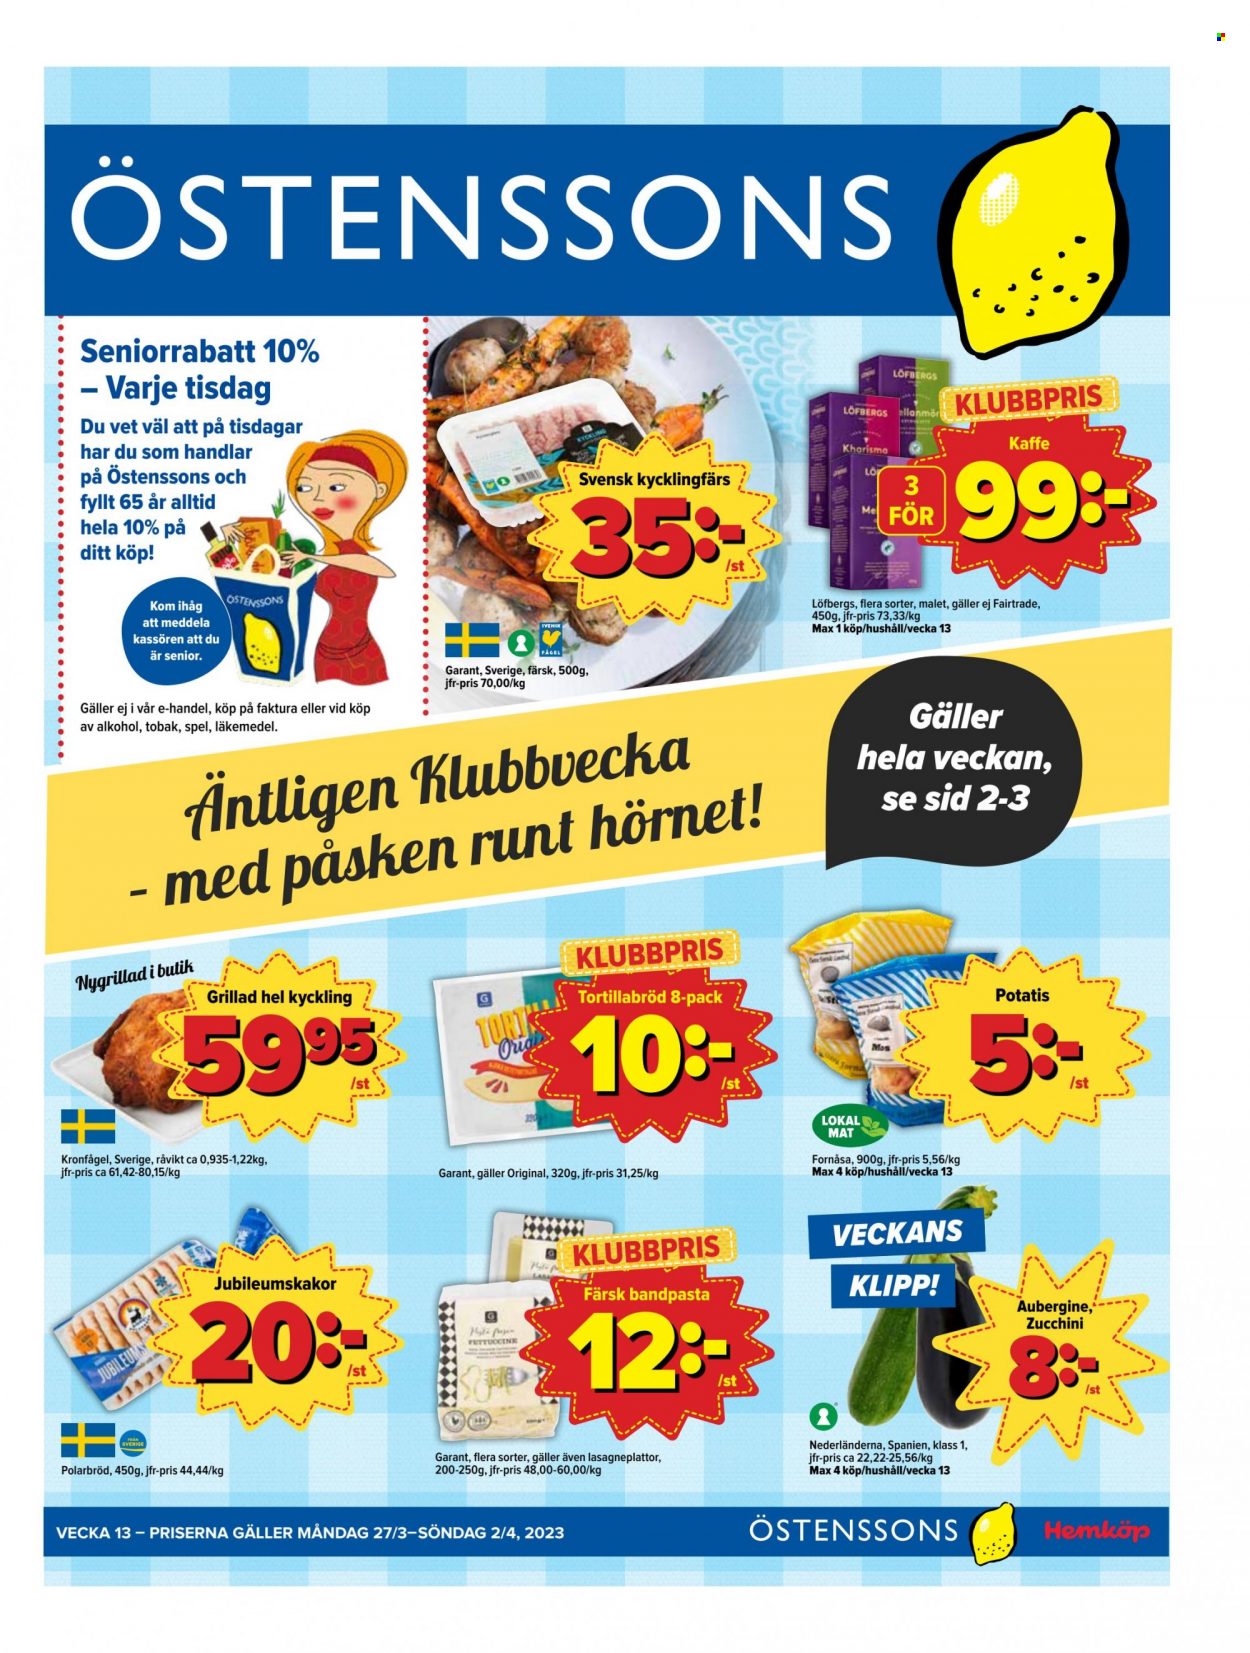 Östenssons reklamblad - 27/3 2023 - 2/4 2023.